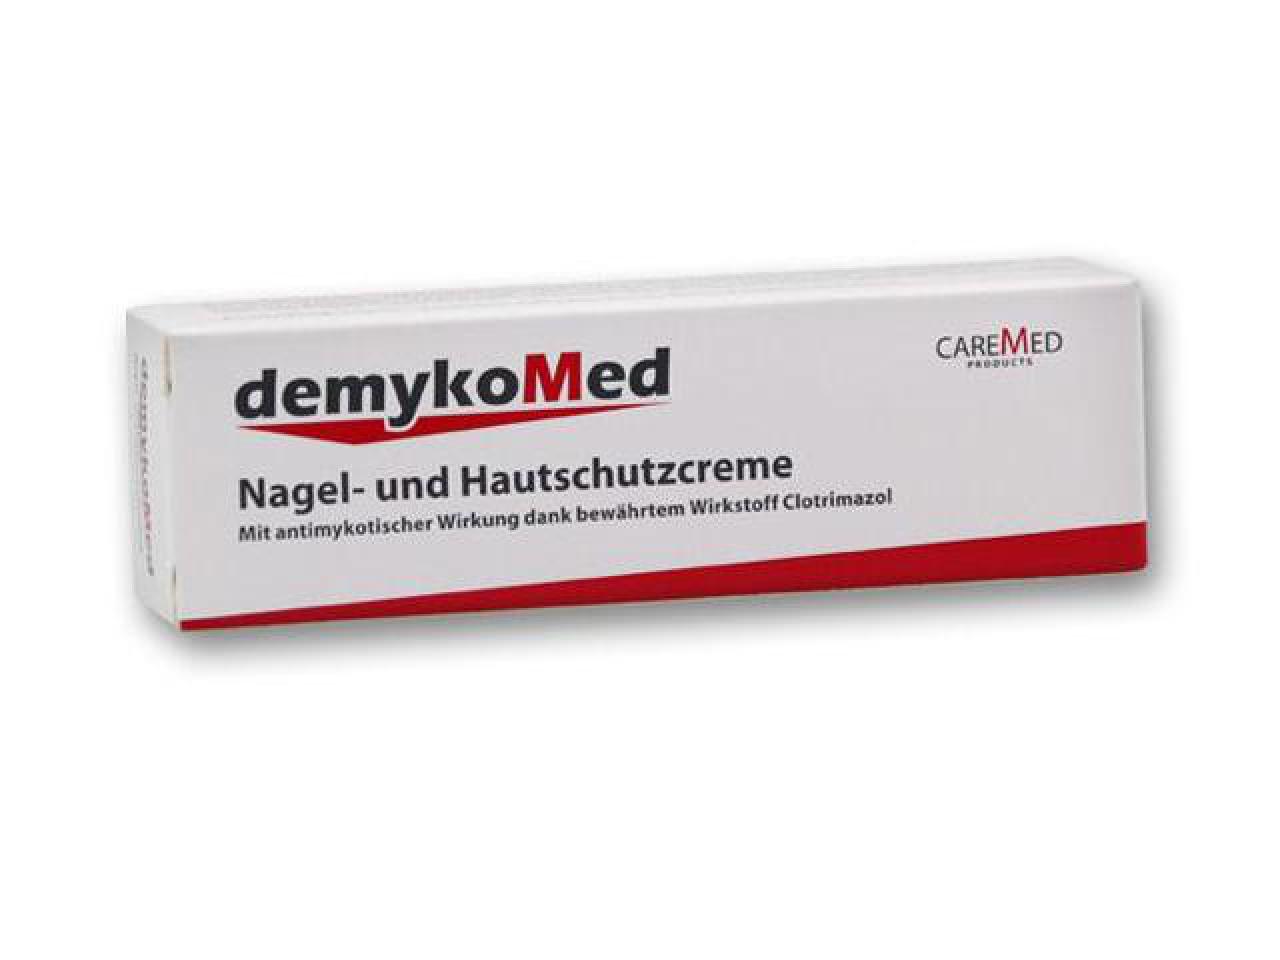 demykoMed Nagel- und Hautschutzcreme 20 ml